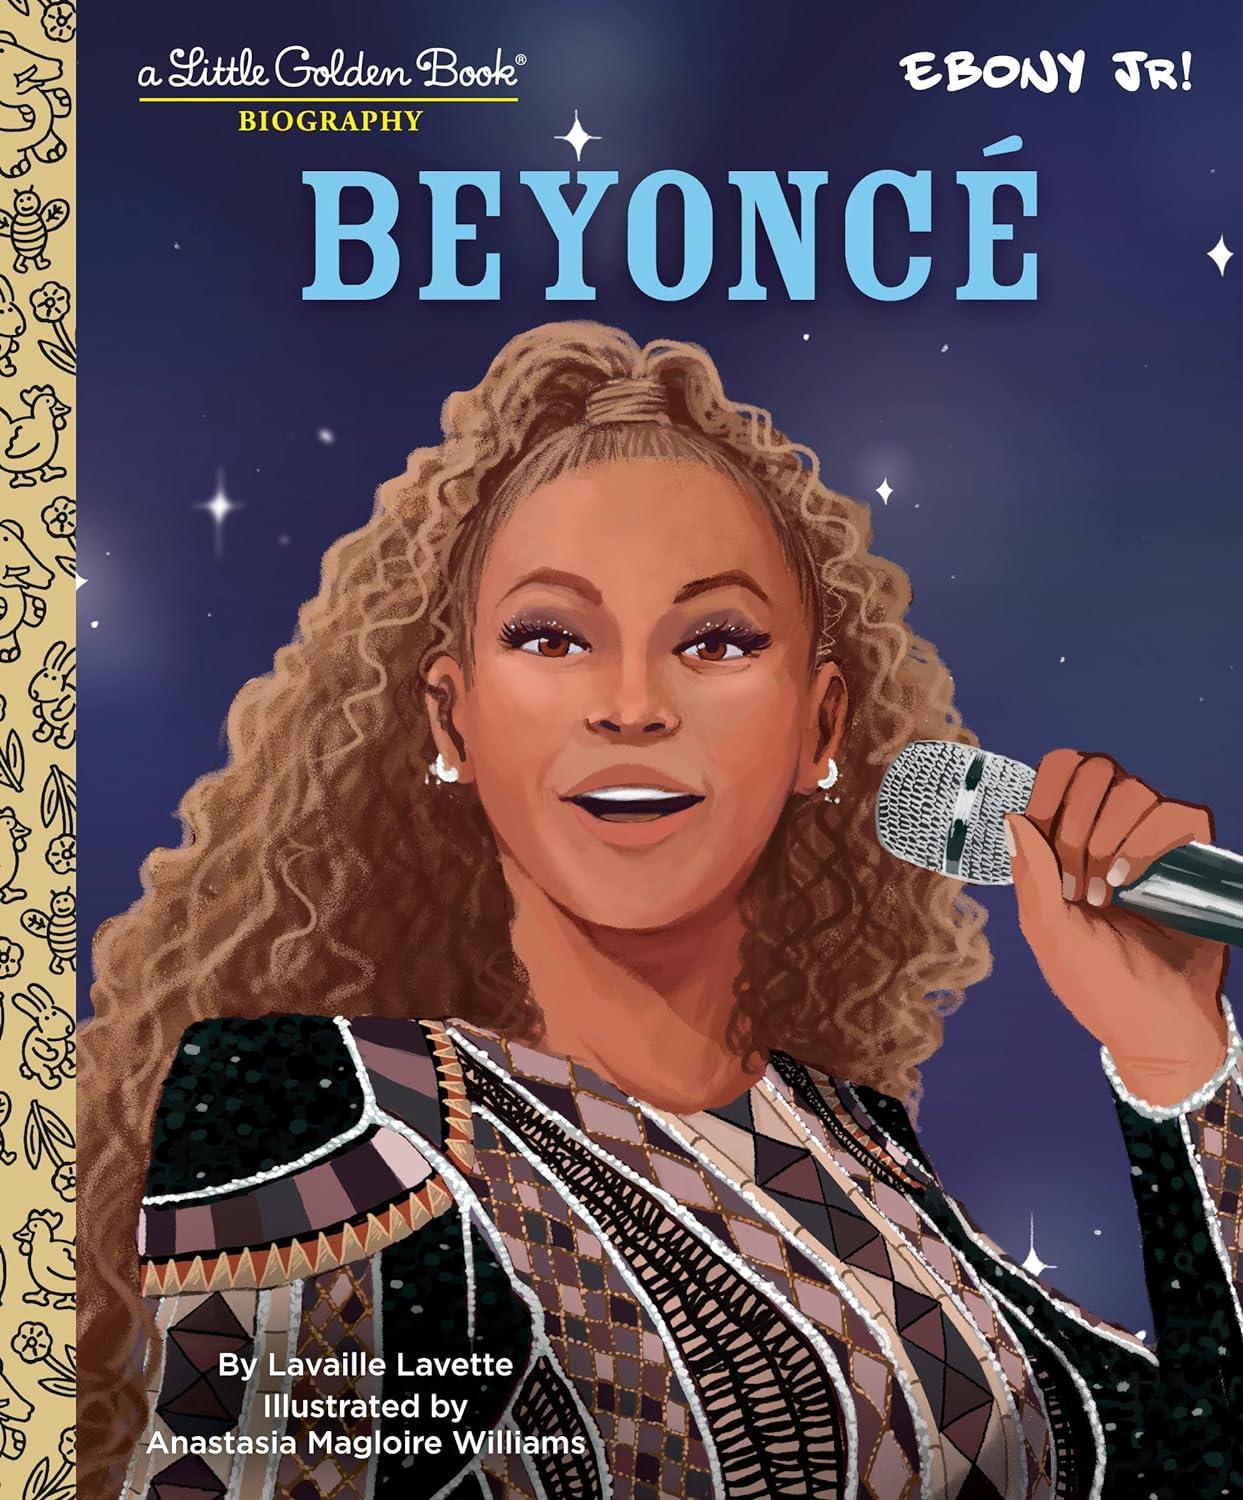 Beyoncé lille gyldne bog